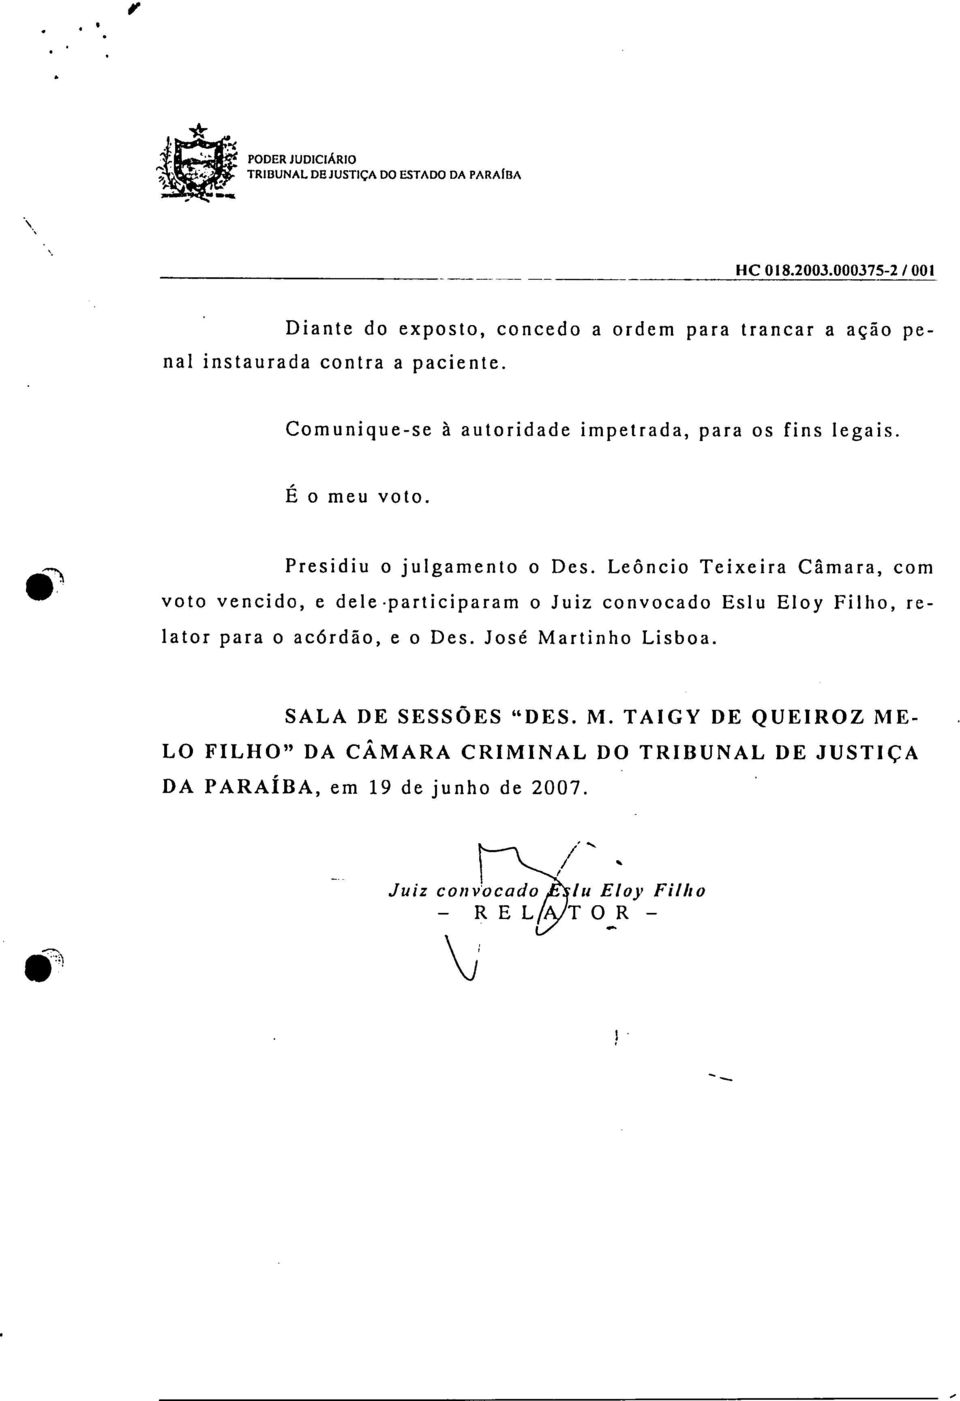 Leôncio Teixeira Câmara, com voto vencido, e dele -participaram o Juiz convocado Eslu Eloy Filho, relator para o acórdão, e o Des.